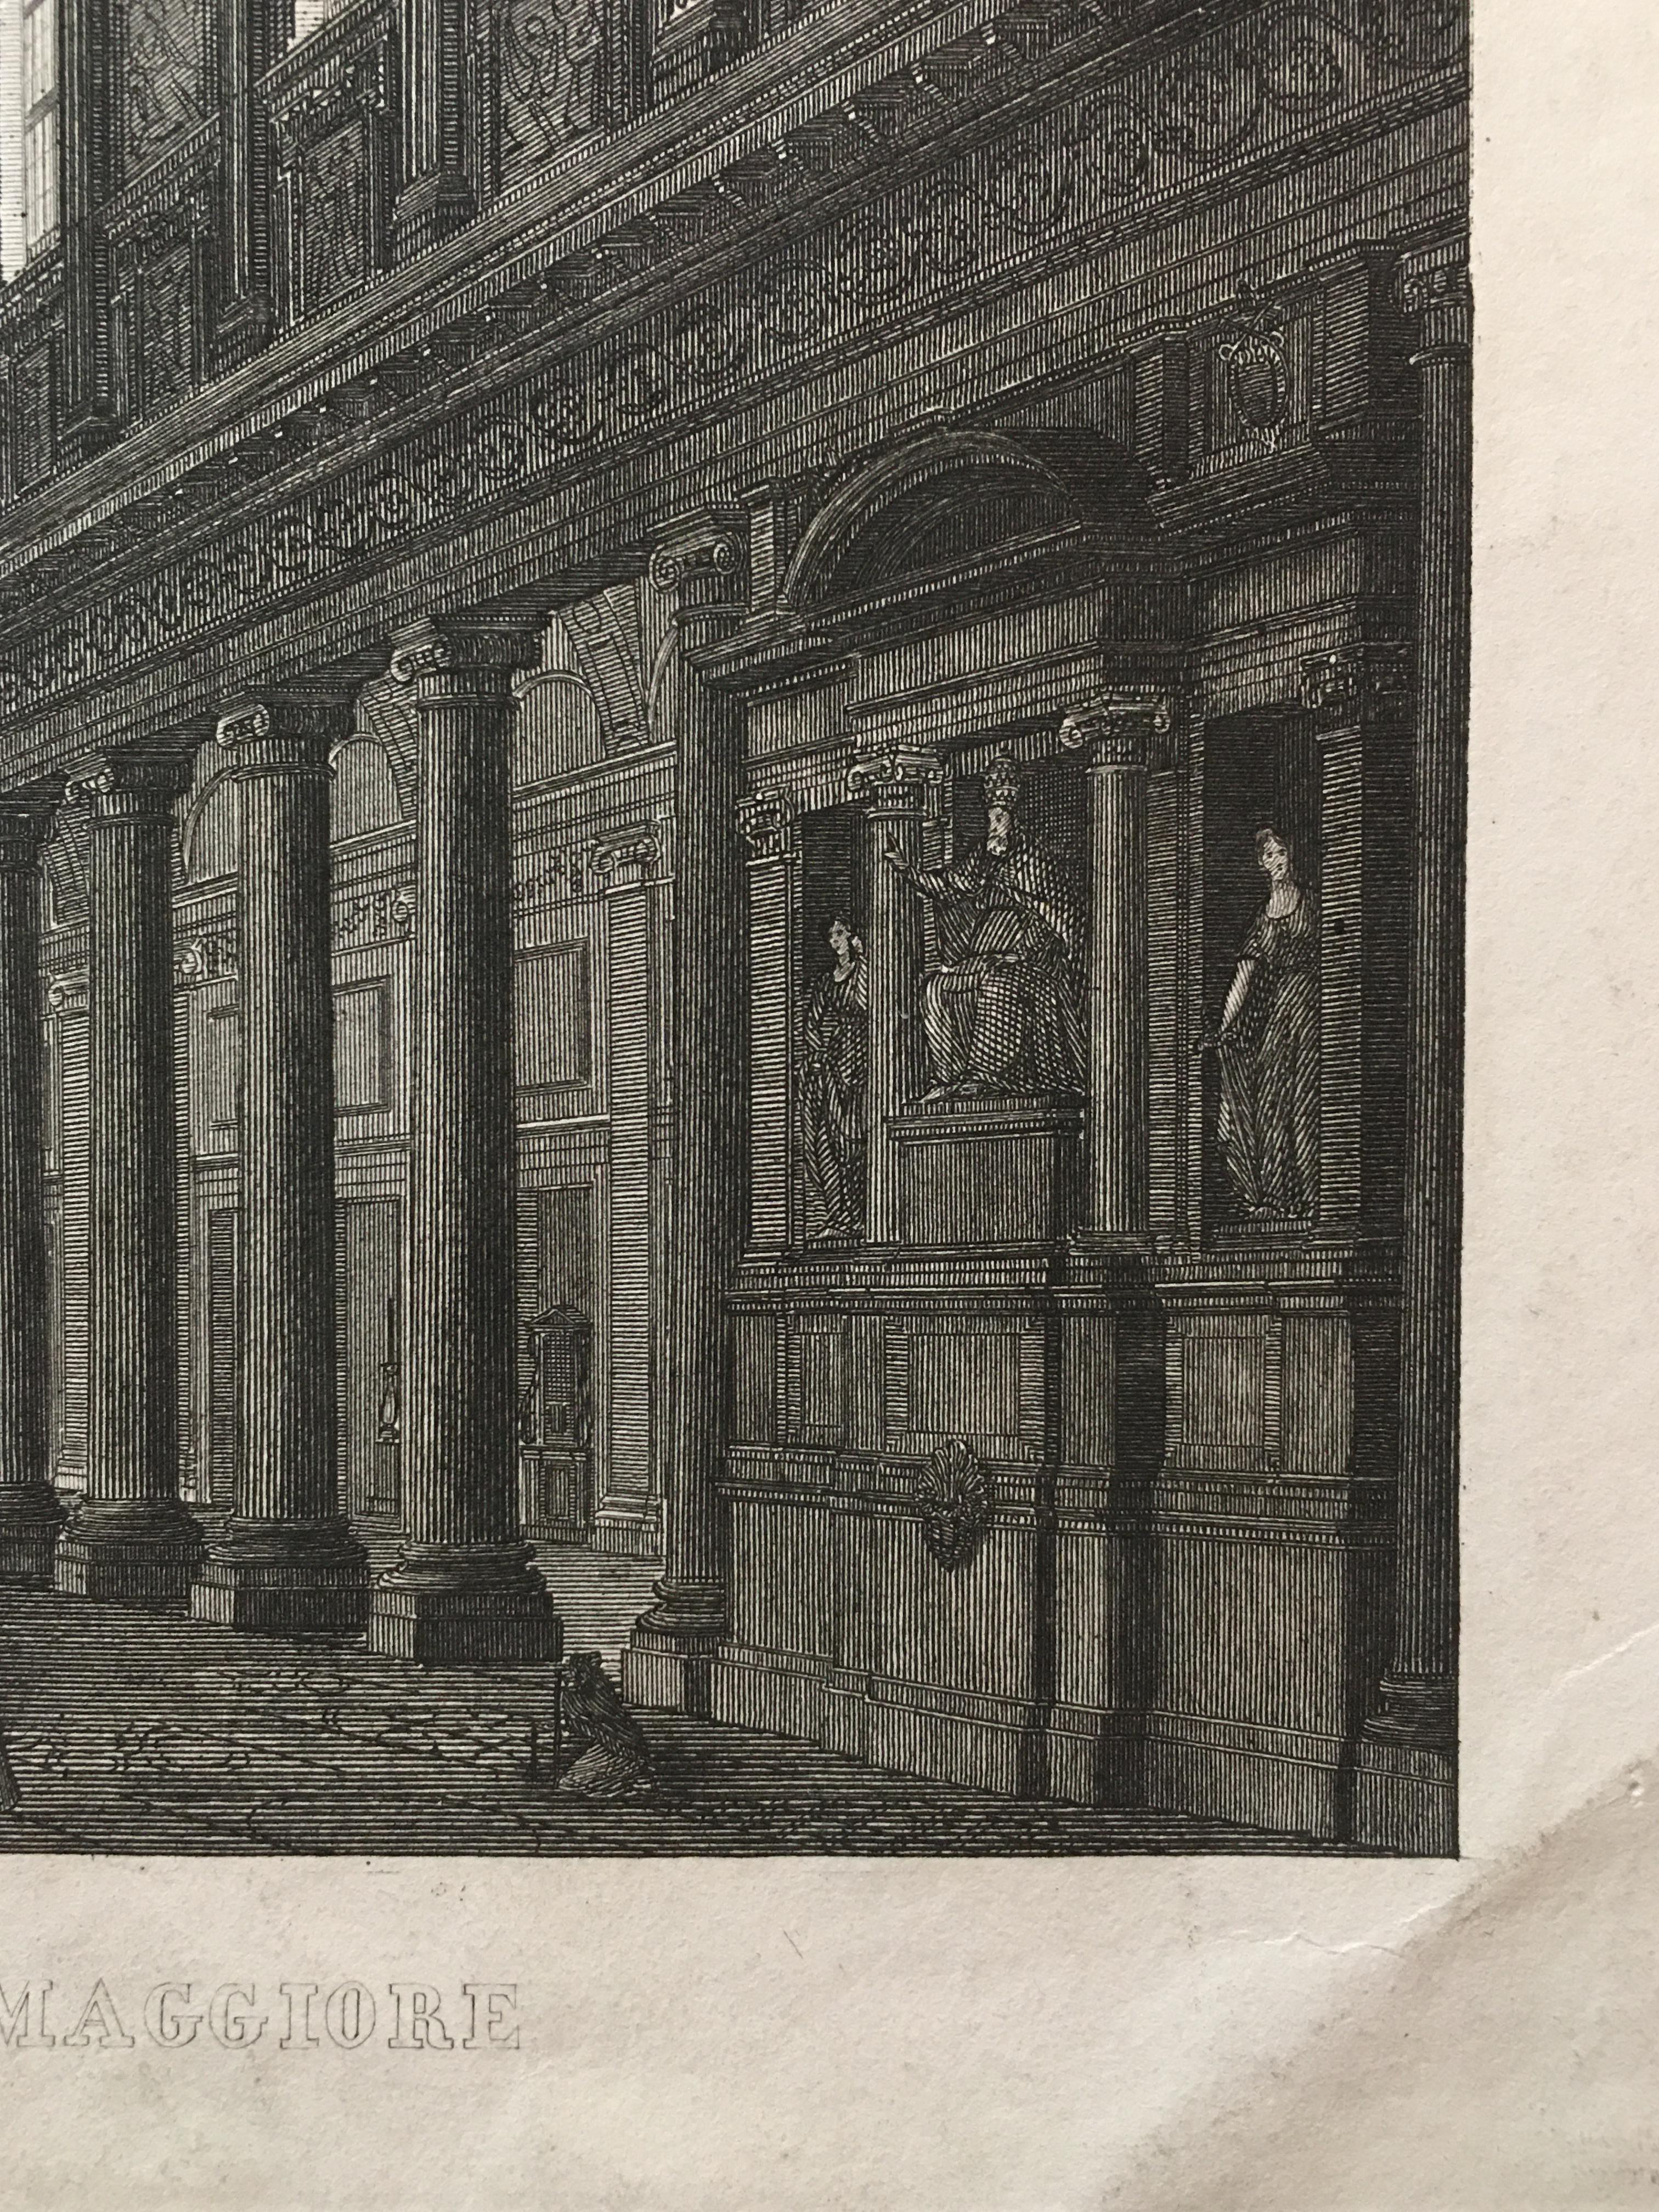 Italian Period Engraving Interior View of Santa Maria Maggiore in Rome